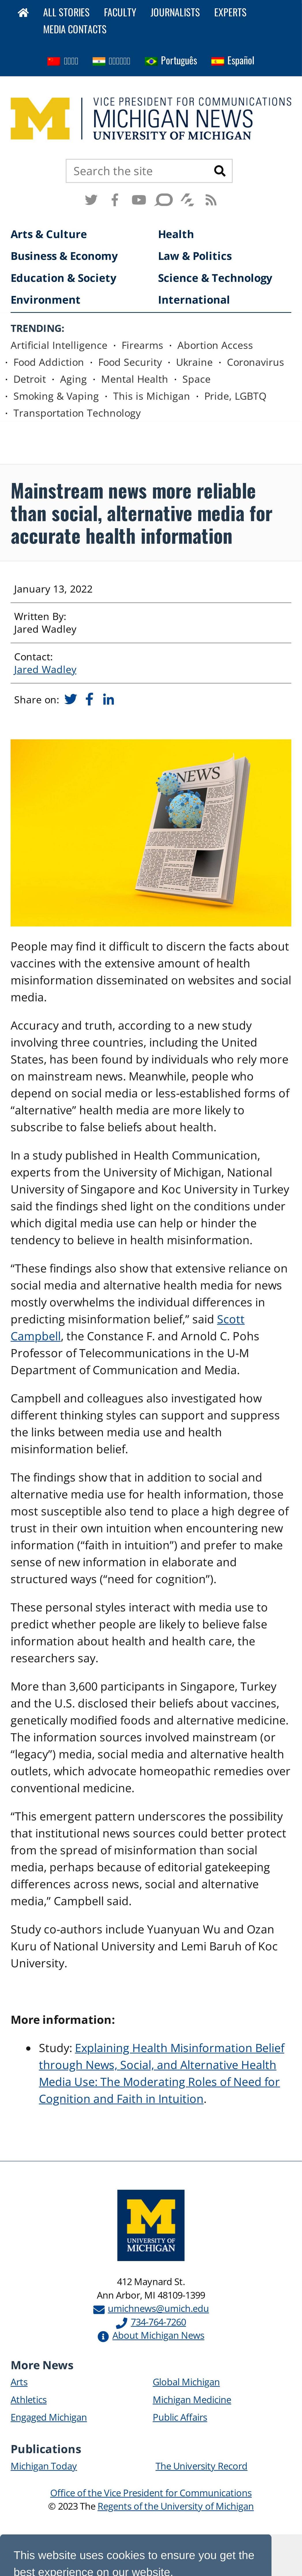 Mainstream news more reliable than social, alternative media for health infos